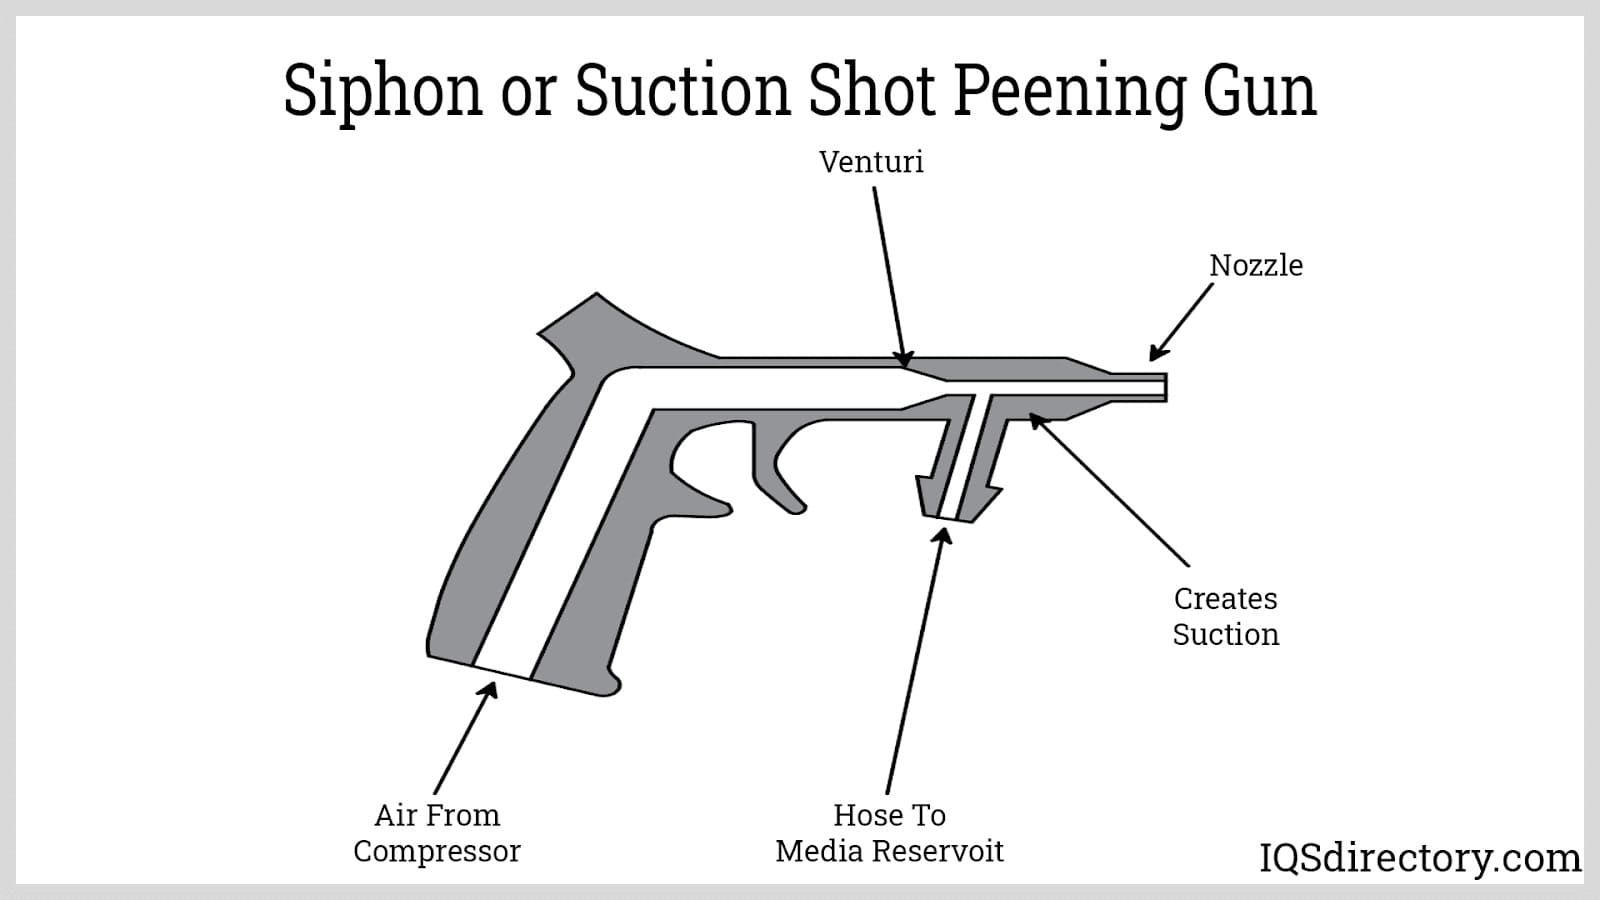 Siphon or Suction Shot Peening Gun